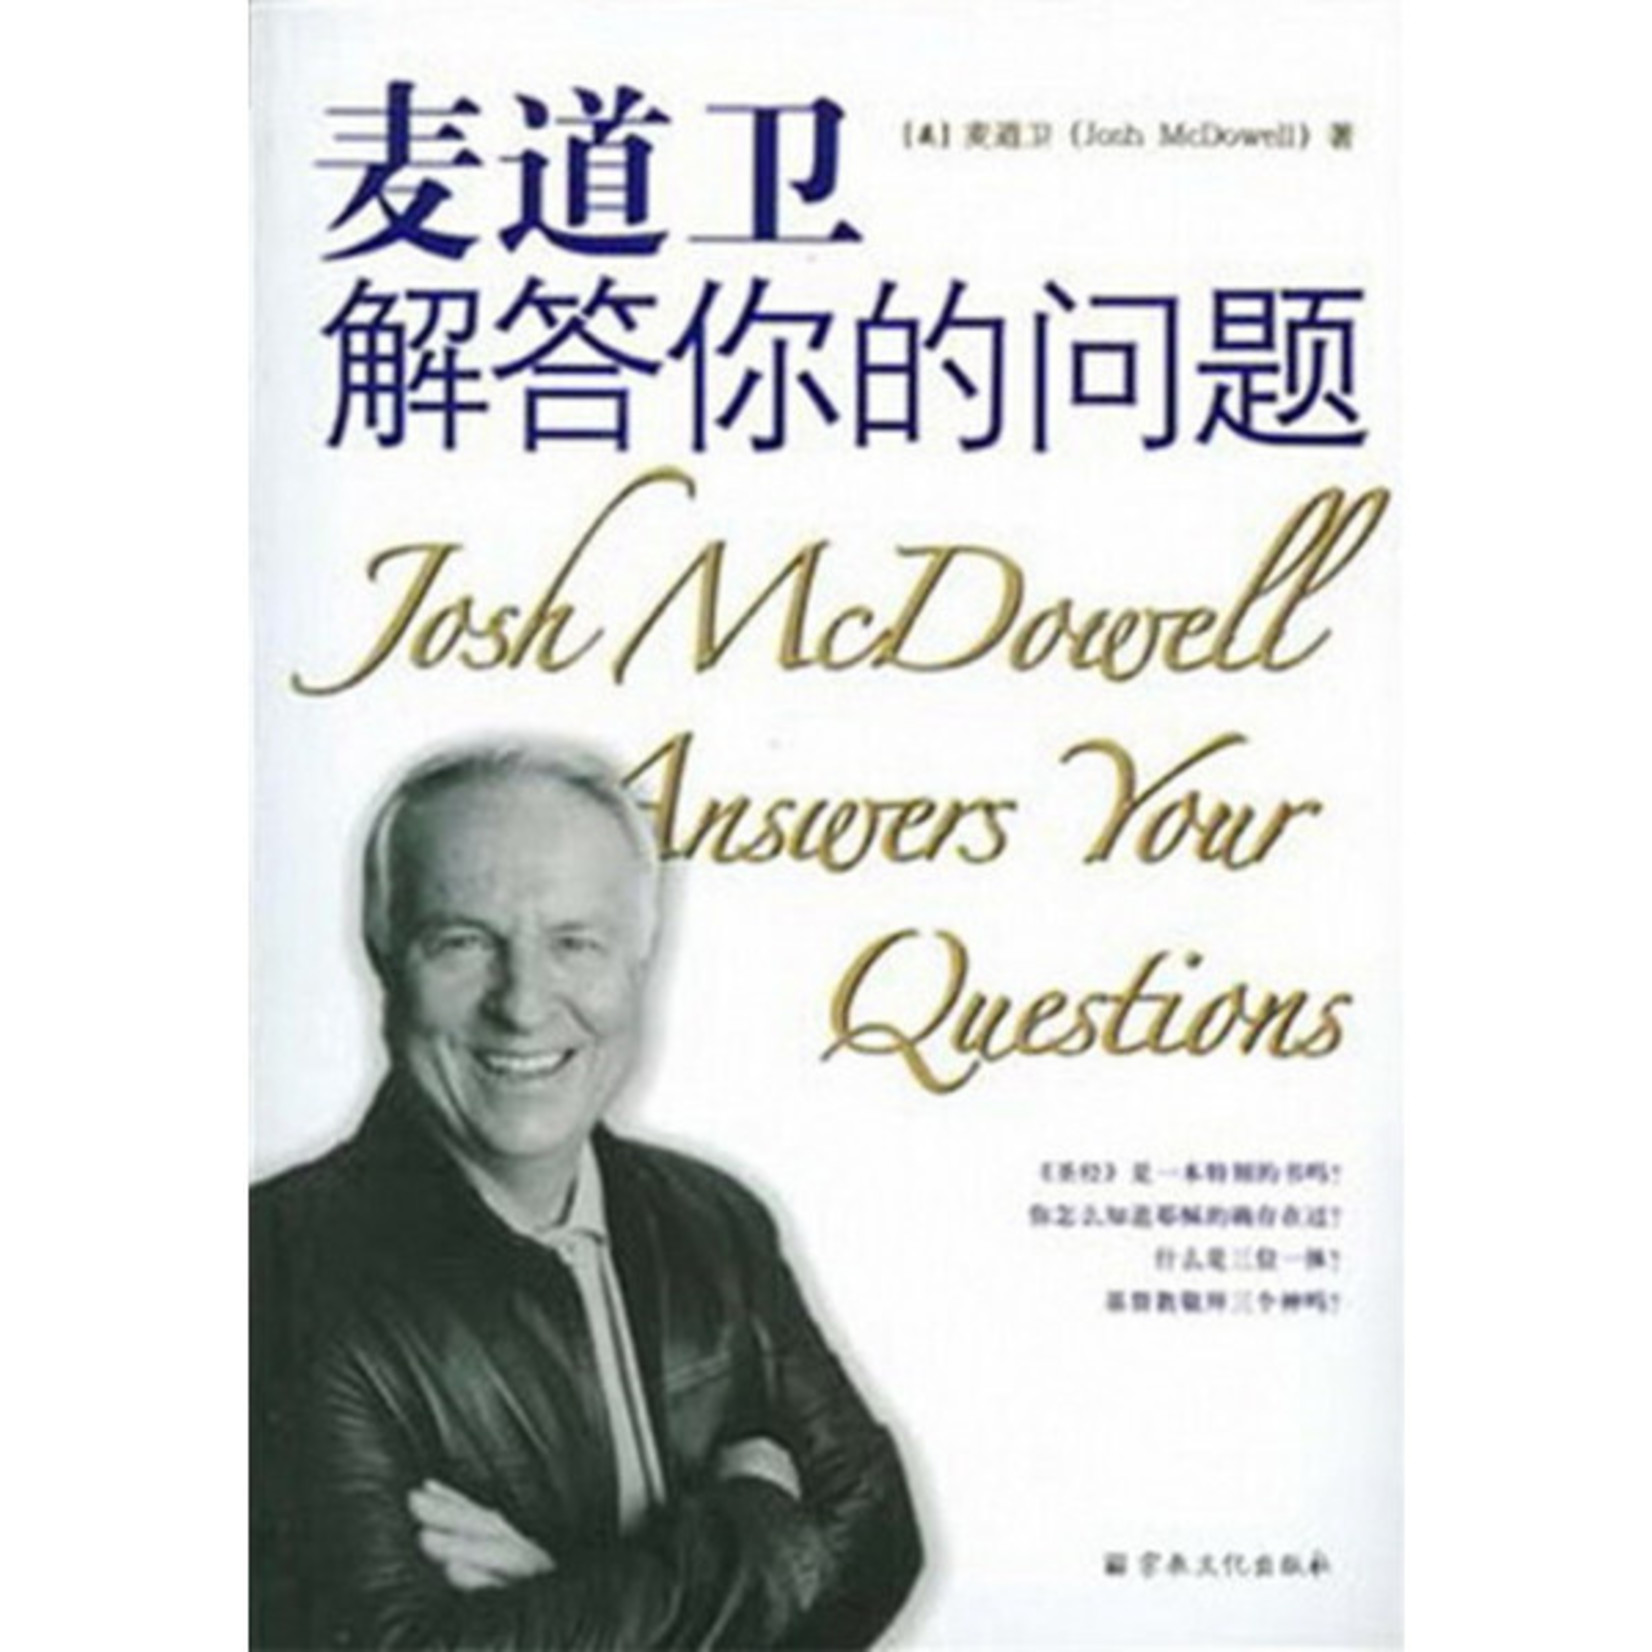 宗教文化出版社 (CN) 麦道卫解答你的问题 Josh MCDowell Answers Your Questions